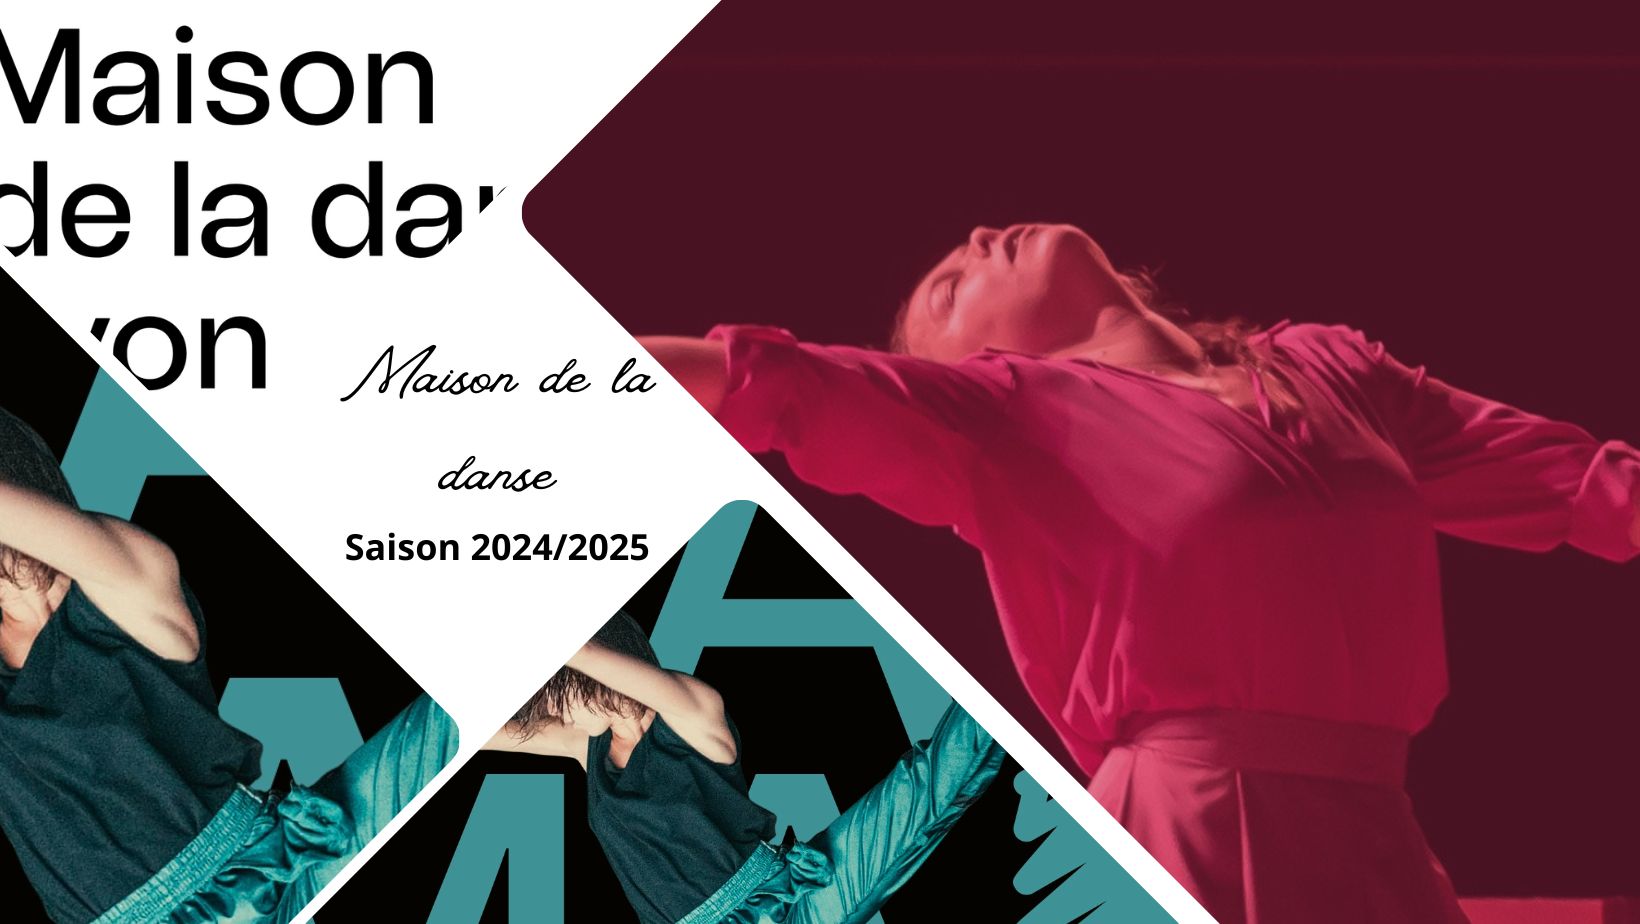 Maison de la danse de Lyon, saison 2024/2025 : entre retours attendus et créativité